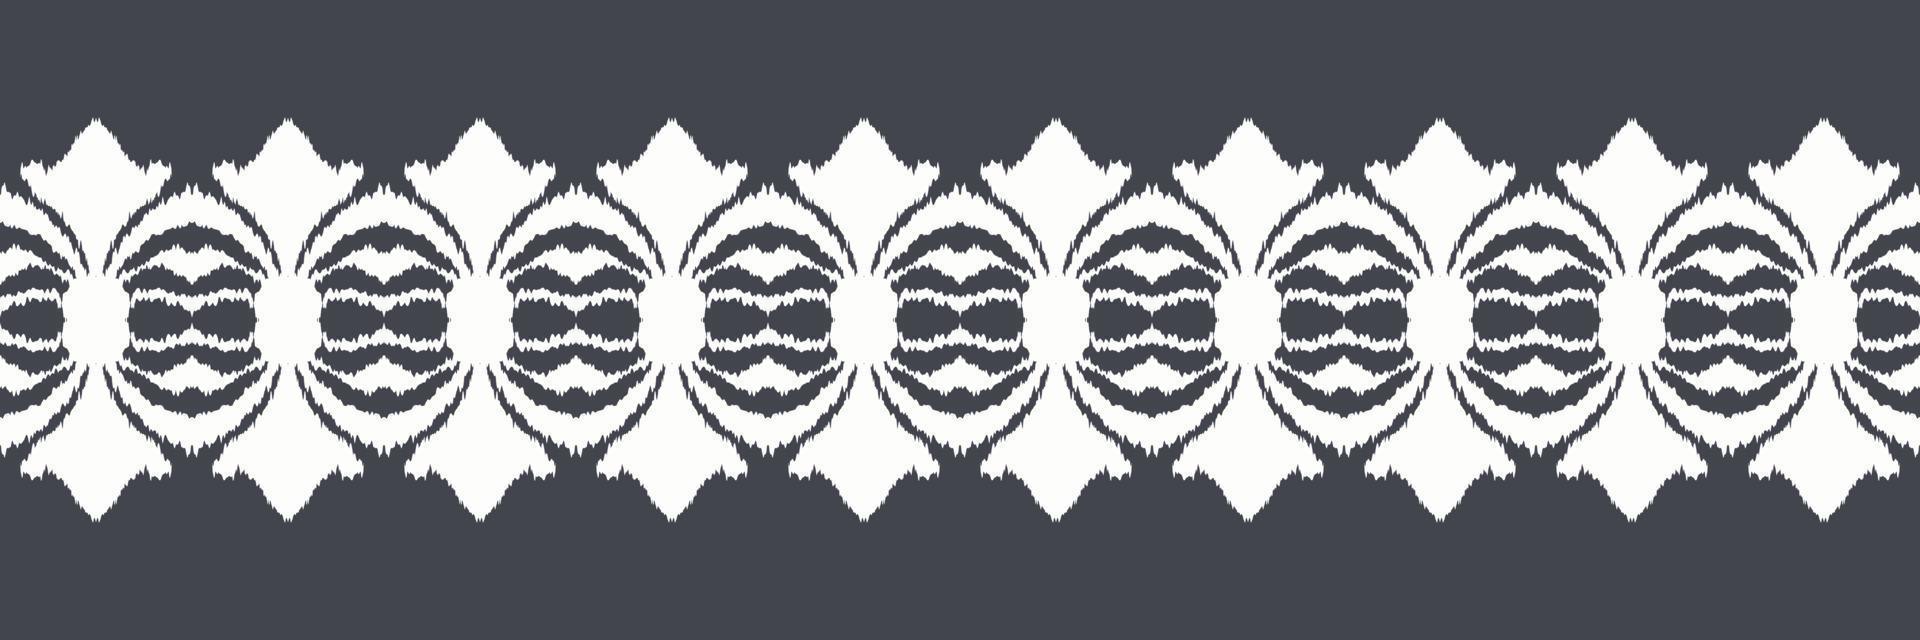 batik textil- ikat diamant sömlös mönster digital vektor design för skriva ut saree kurti borneo tyg gräns borsta symboler färgrutor bomull